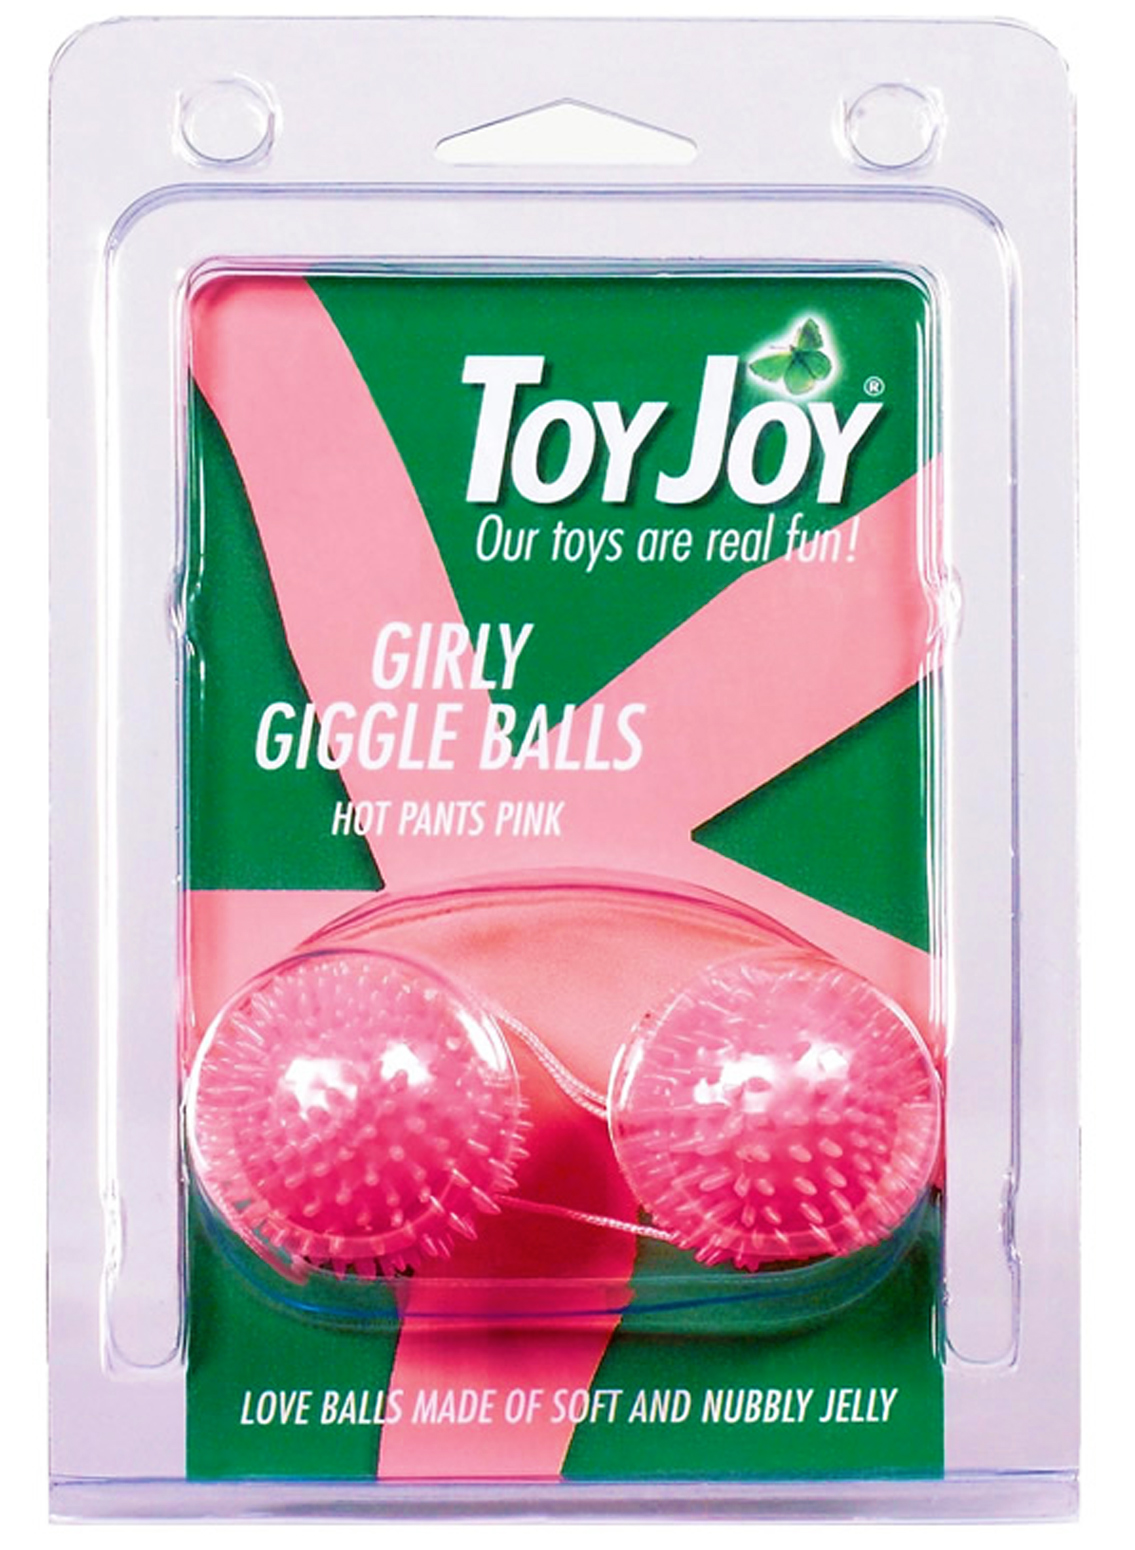 Toy Joy Girly Giggle Balls